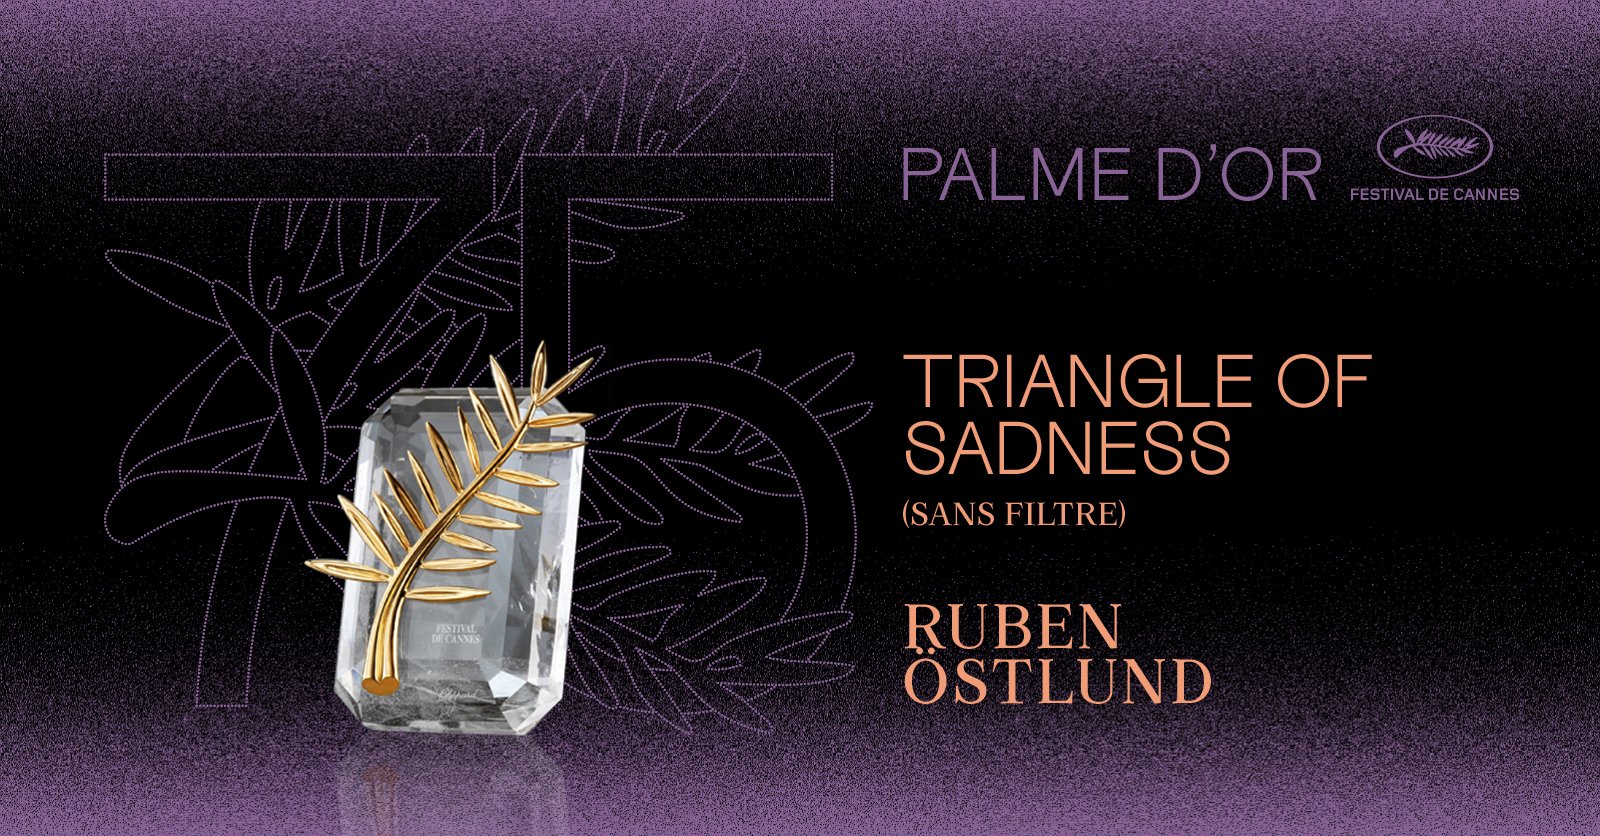 Festival de Cannes on X: "La Palme d'or est attribuée à TRIANGLE OF SADNESS  (SANS FILTRE) réalisé par Ruben ÖSTLUND #Cannes2022 #Palmares #Awards  #PalmedOr #TRIANGLEOFSADNESS - The Palme d'or winner is Ruben